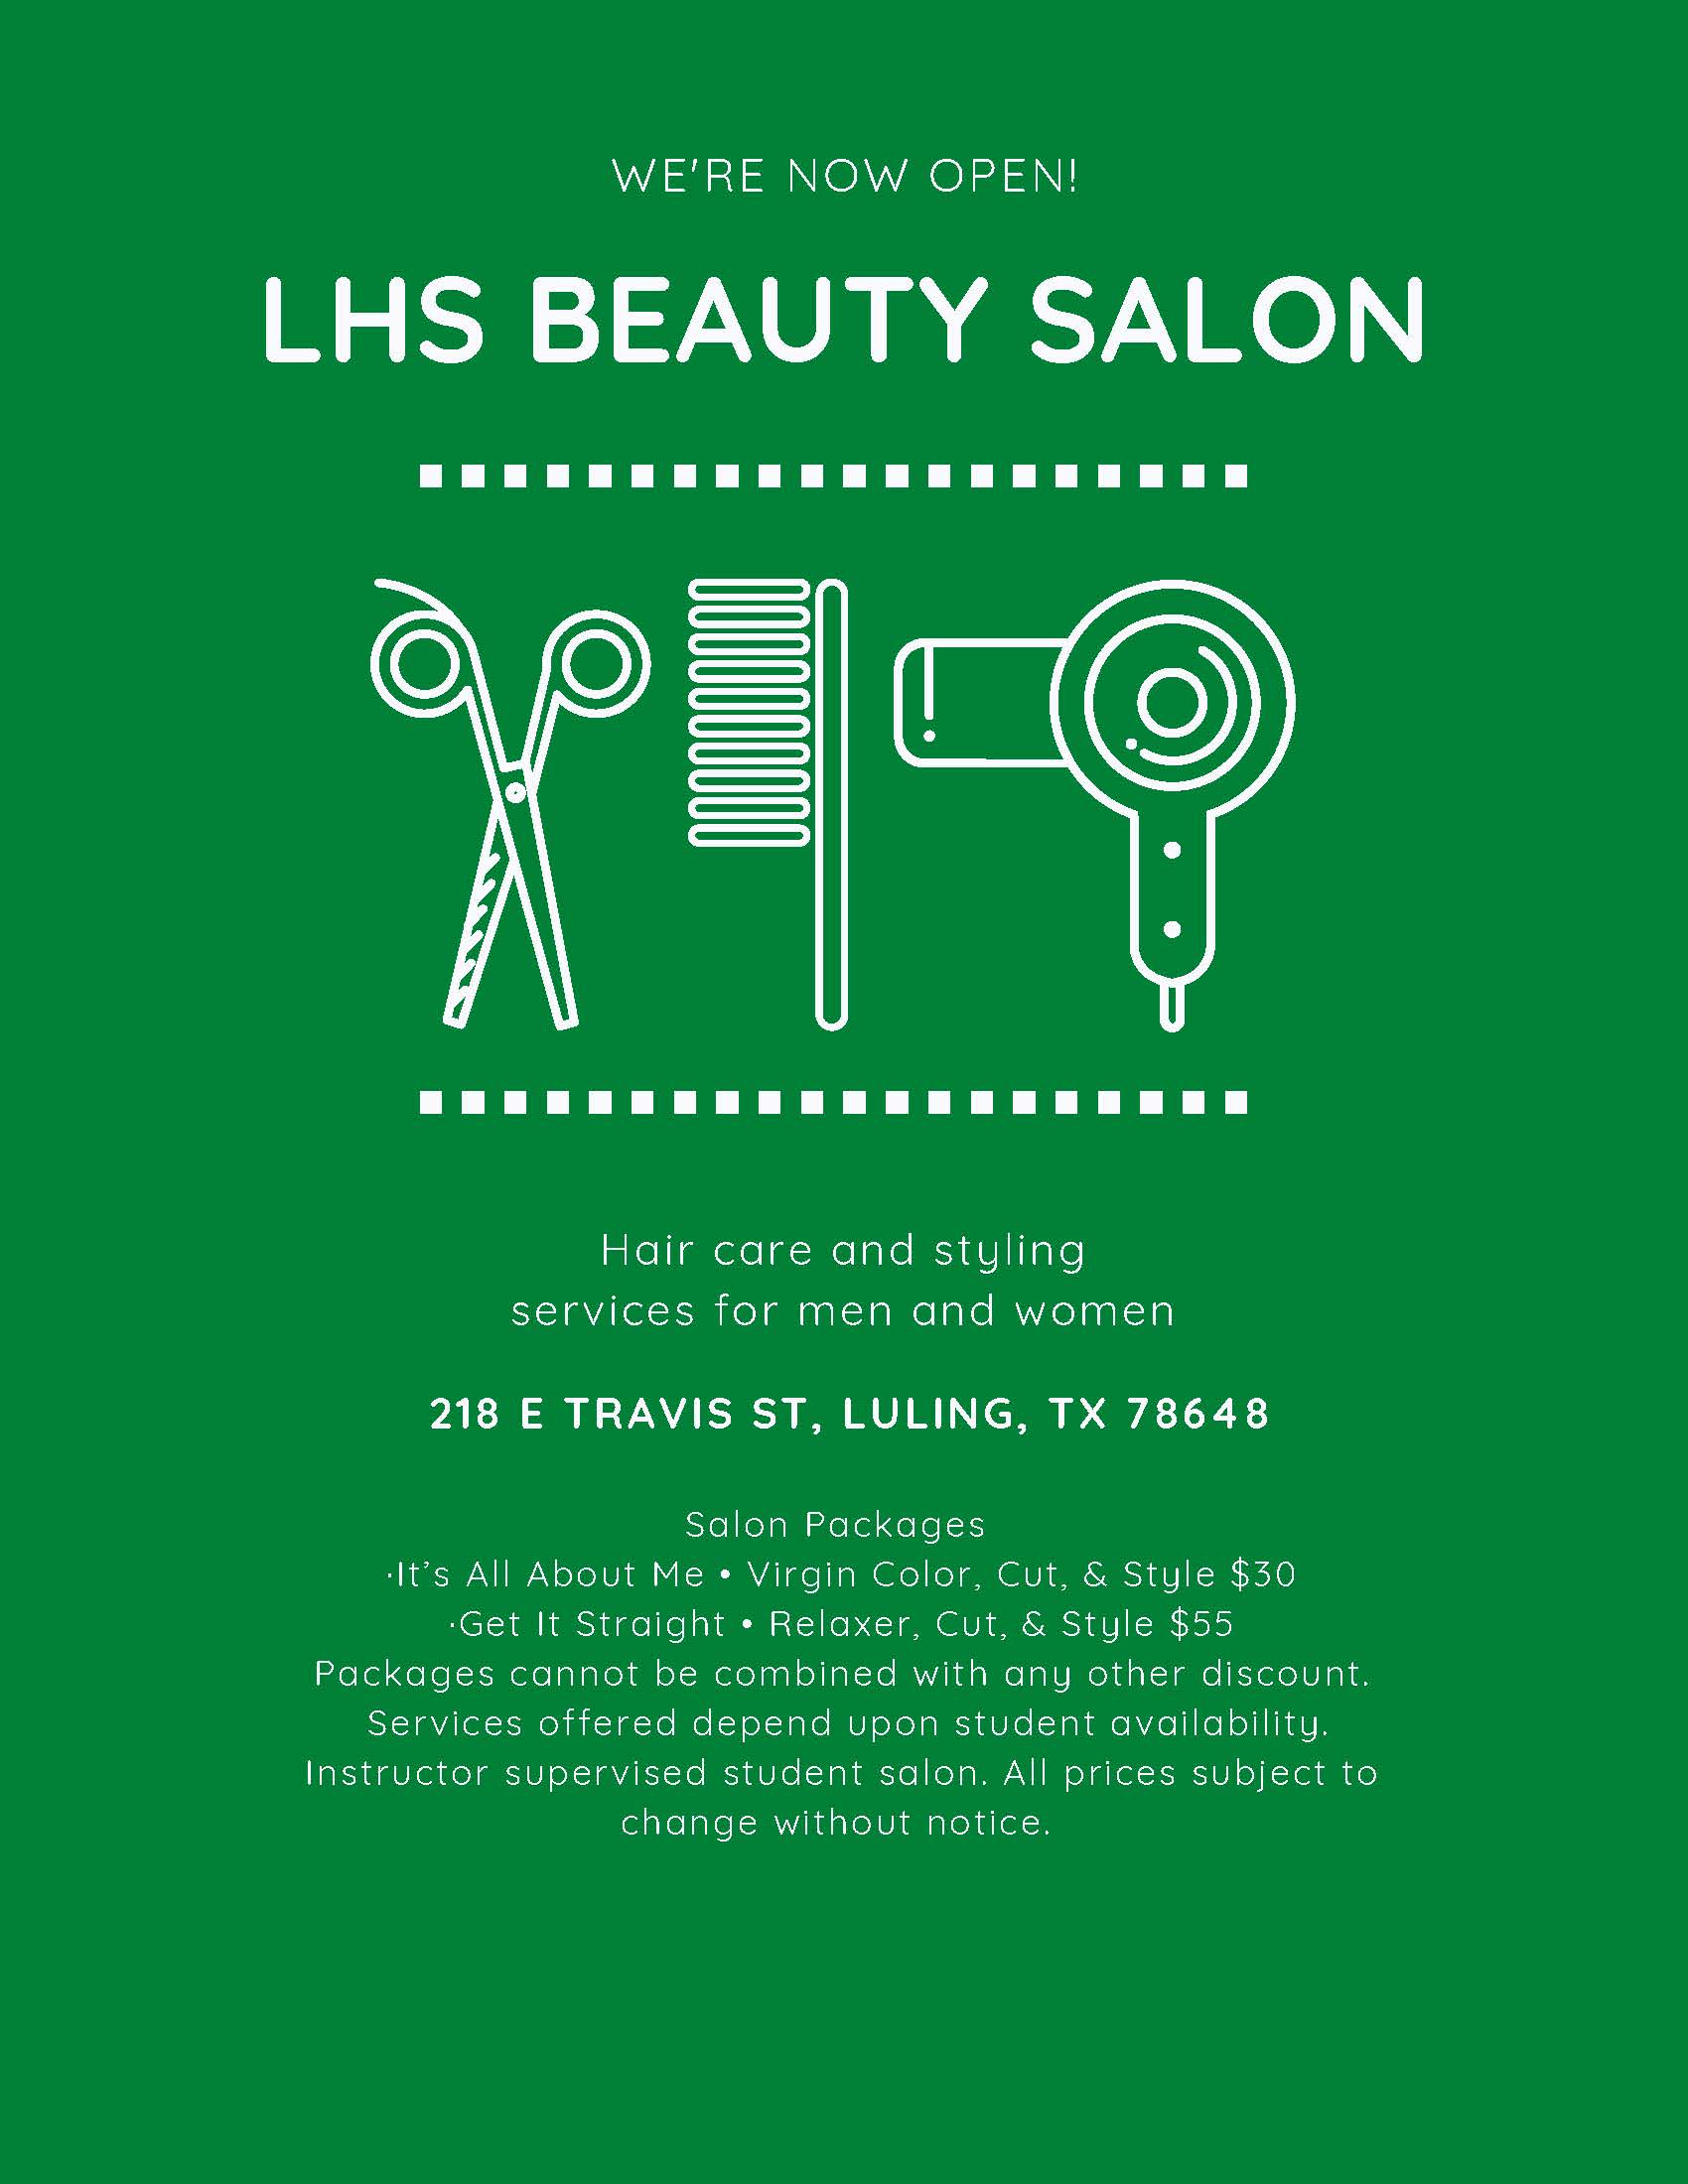 Beauty Salon flyer part 1